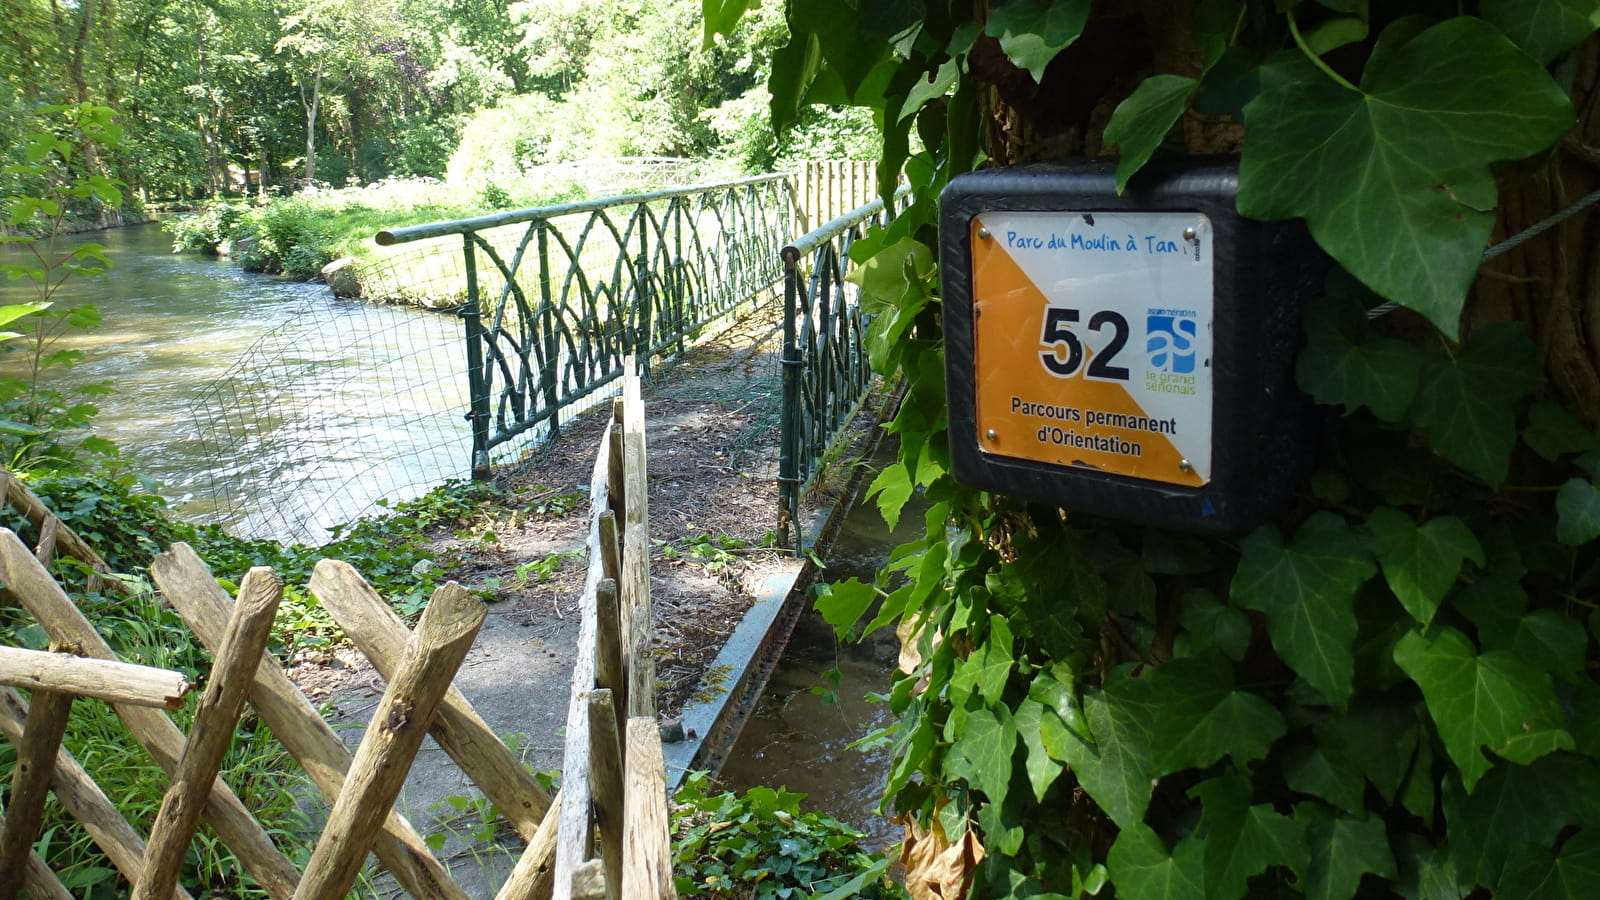 Parcours permanents d'orientation du Parc du Moulin à Tan